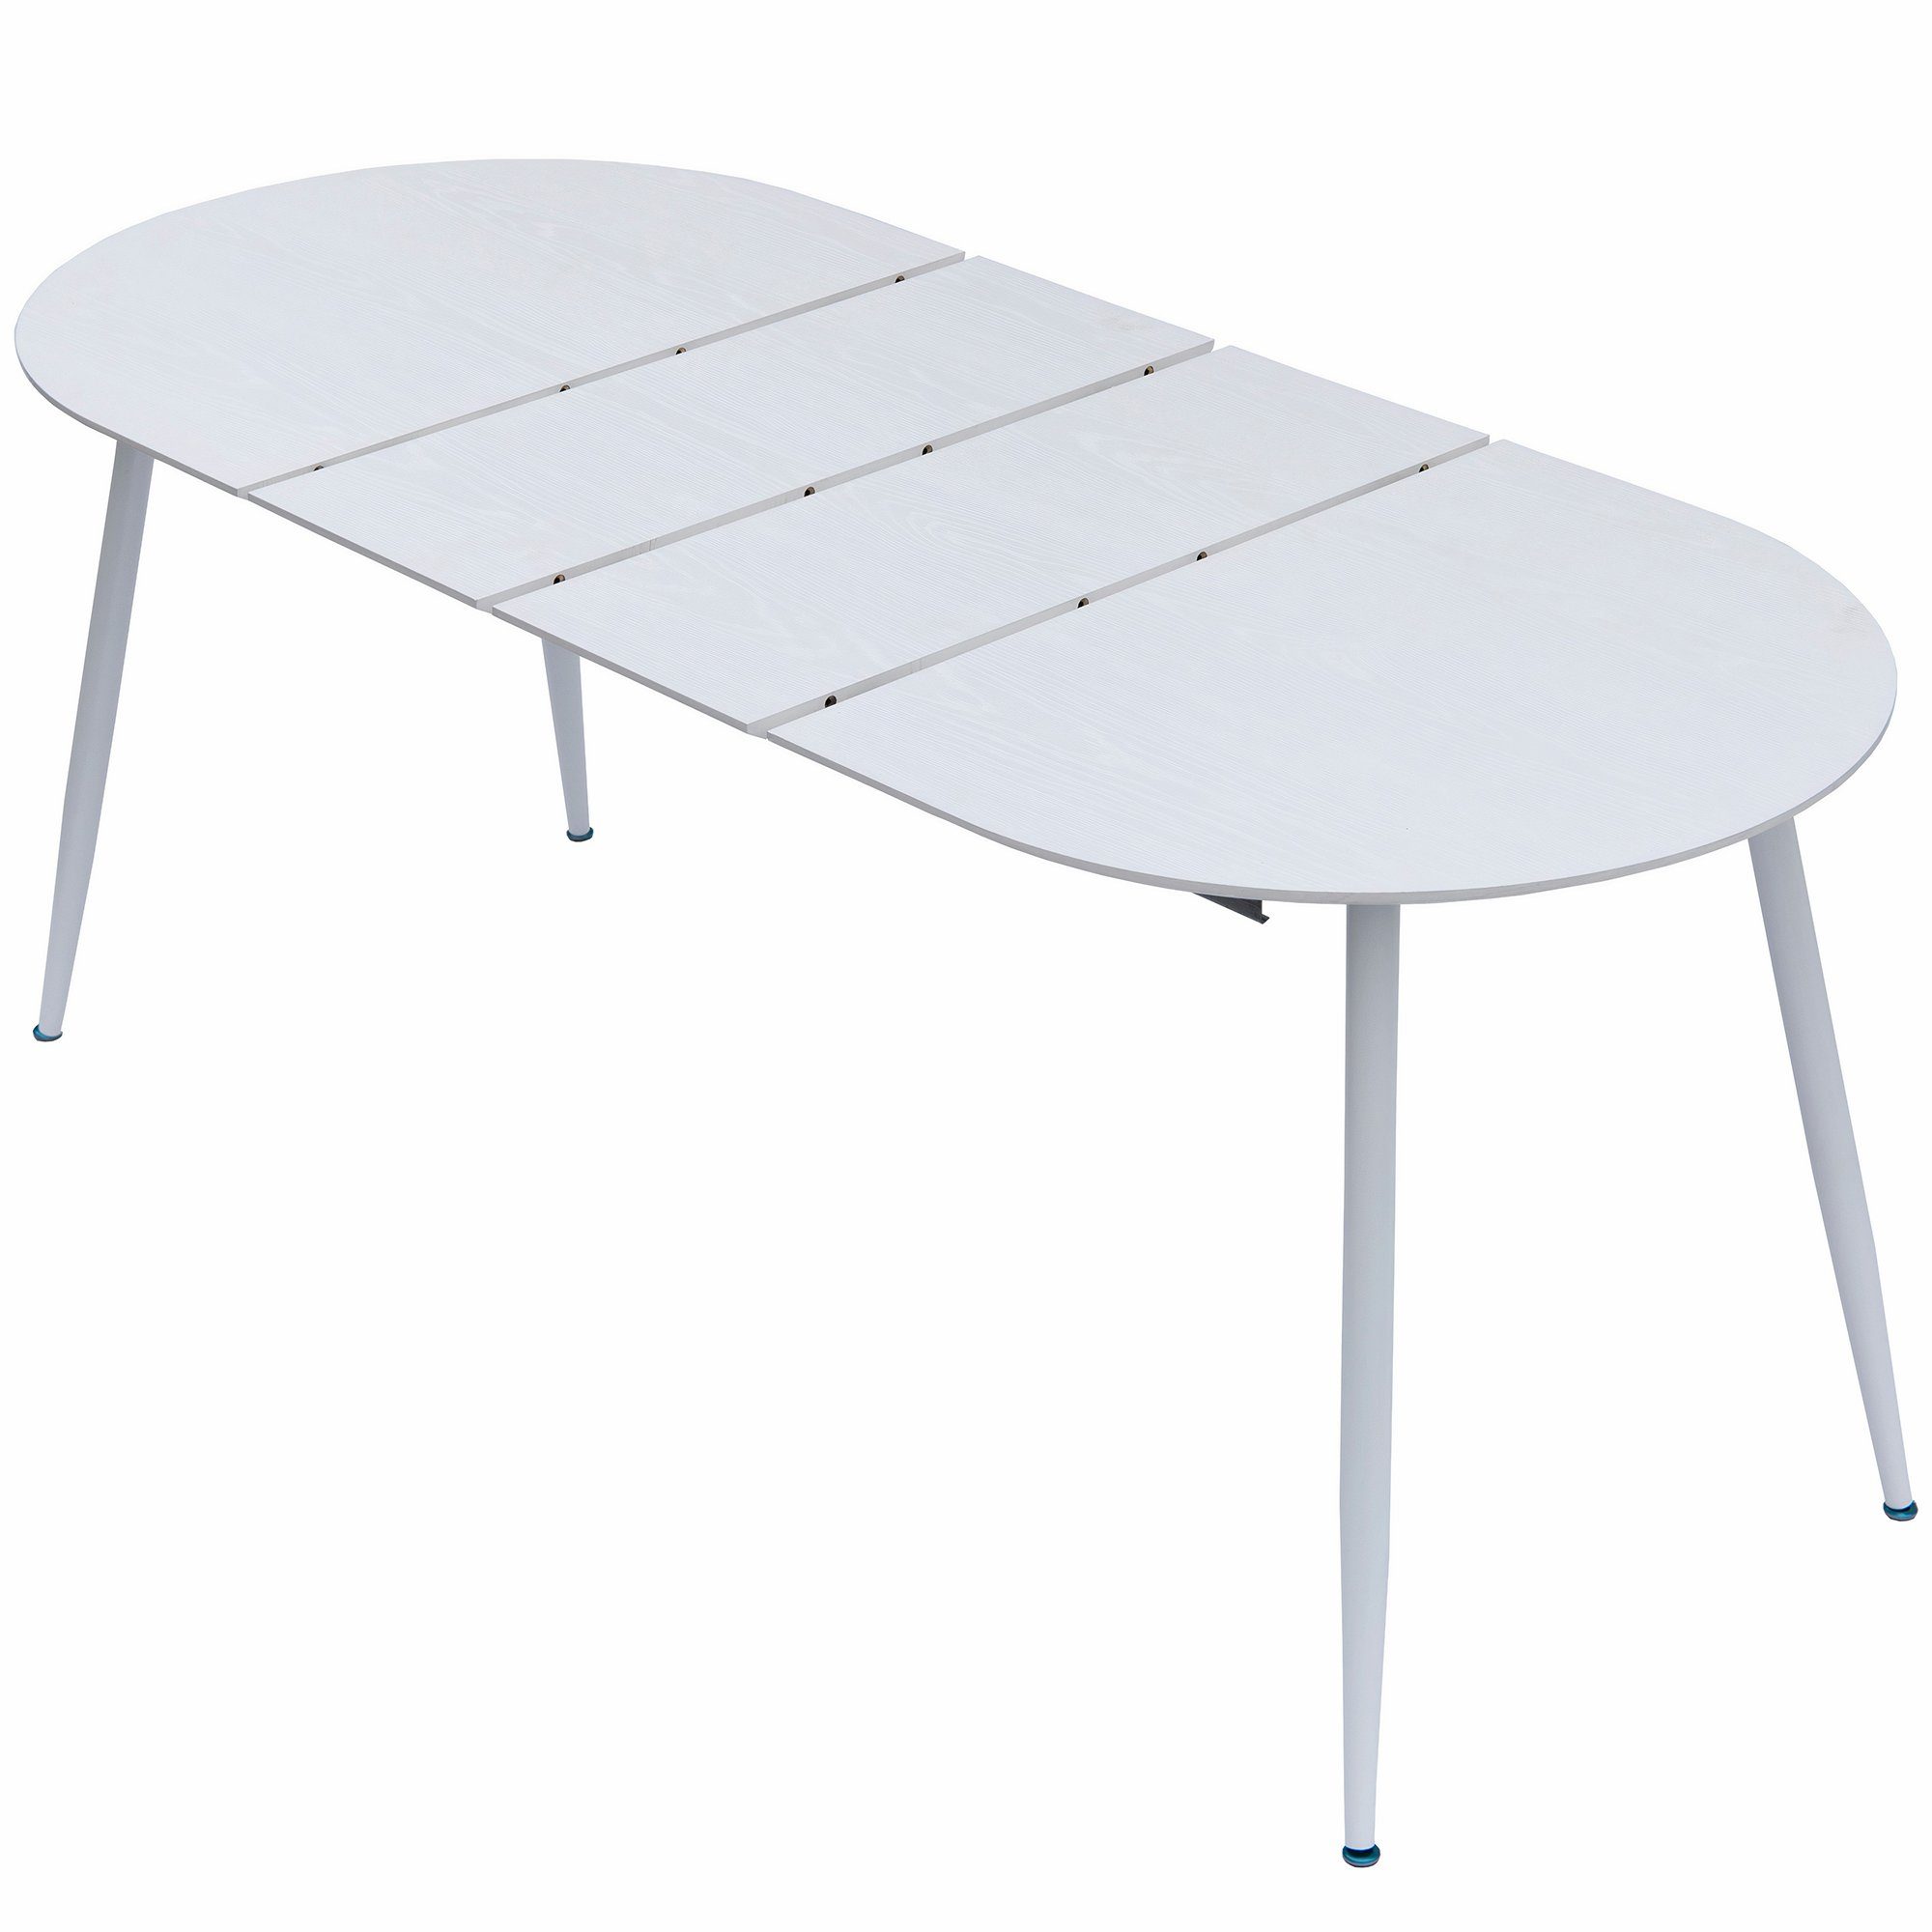 Holz Esstisch Tisch TRISENS 120-150-180x80cm 4-10Pers. Optik Ovaler Weiß Esstisch ausziehbar Rodrigo,